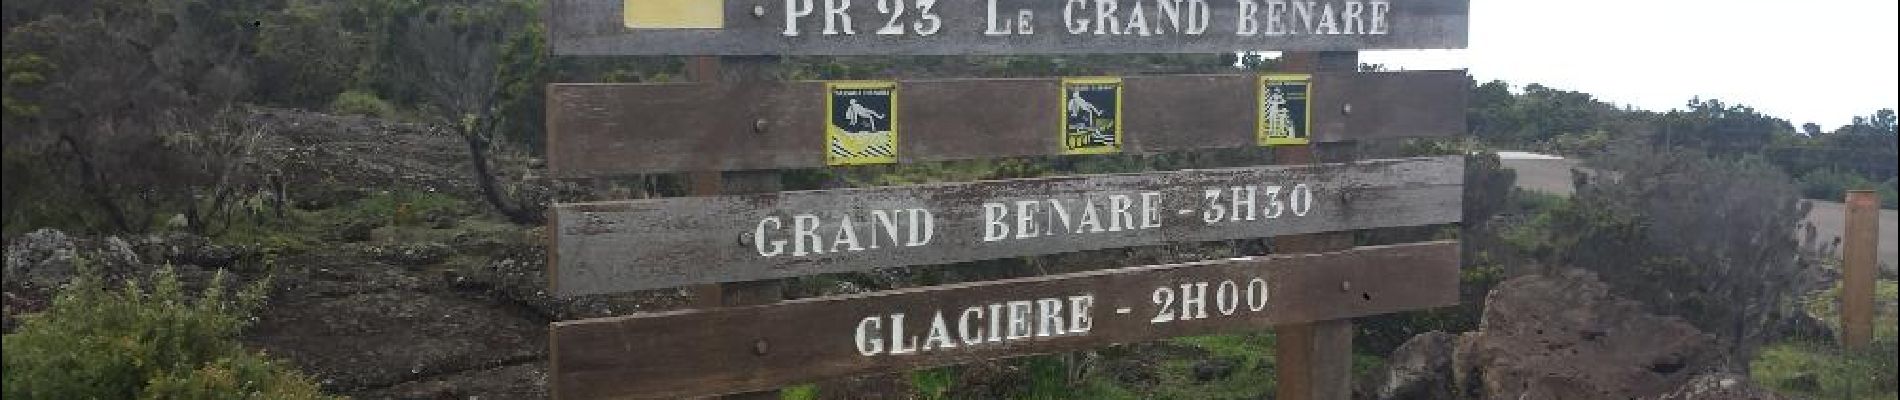 Percorso Marcia Saint-Paul - Maido - Grand Benare - Glacière - Photo